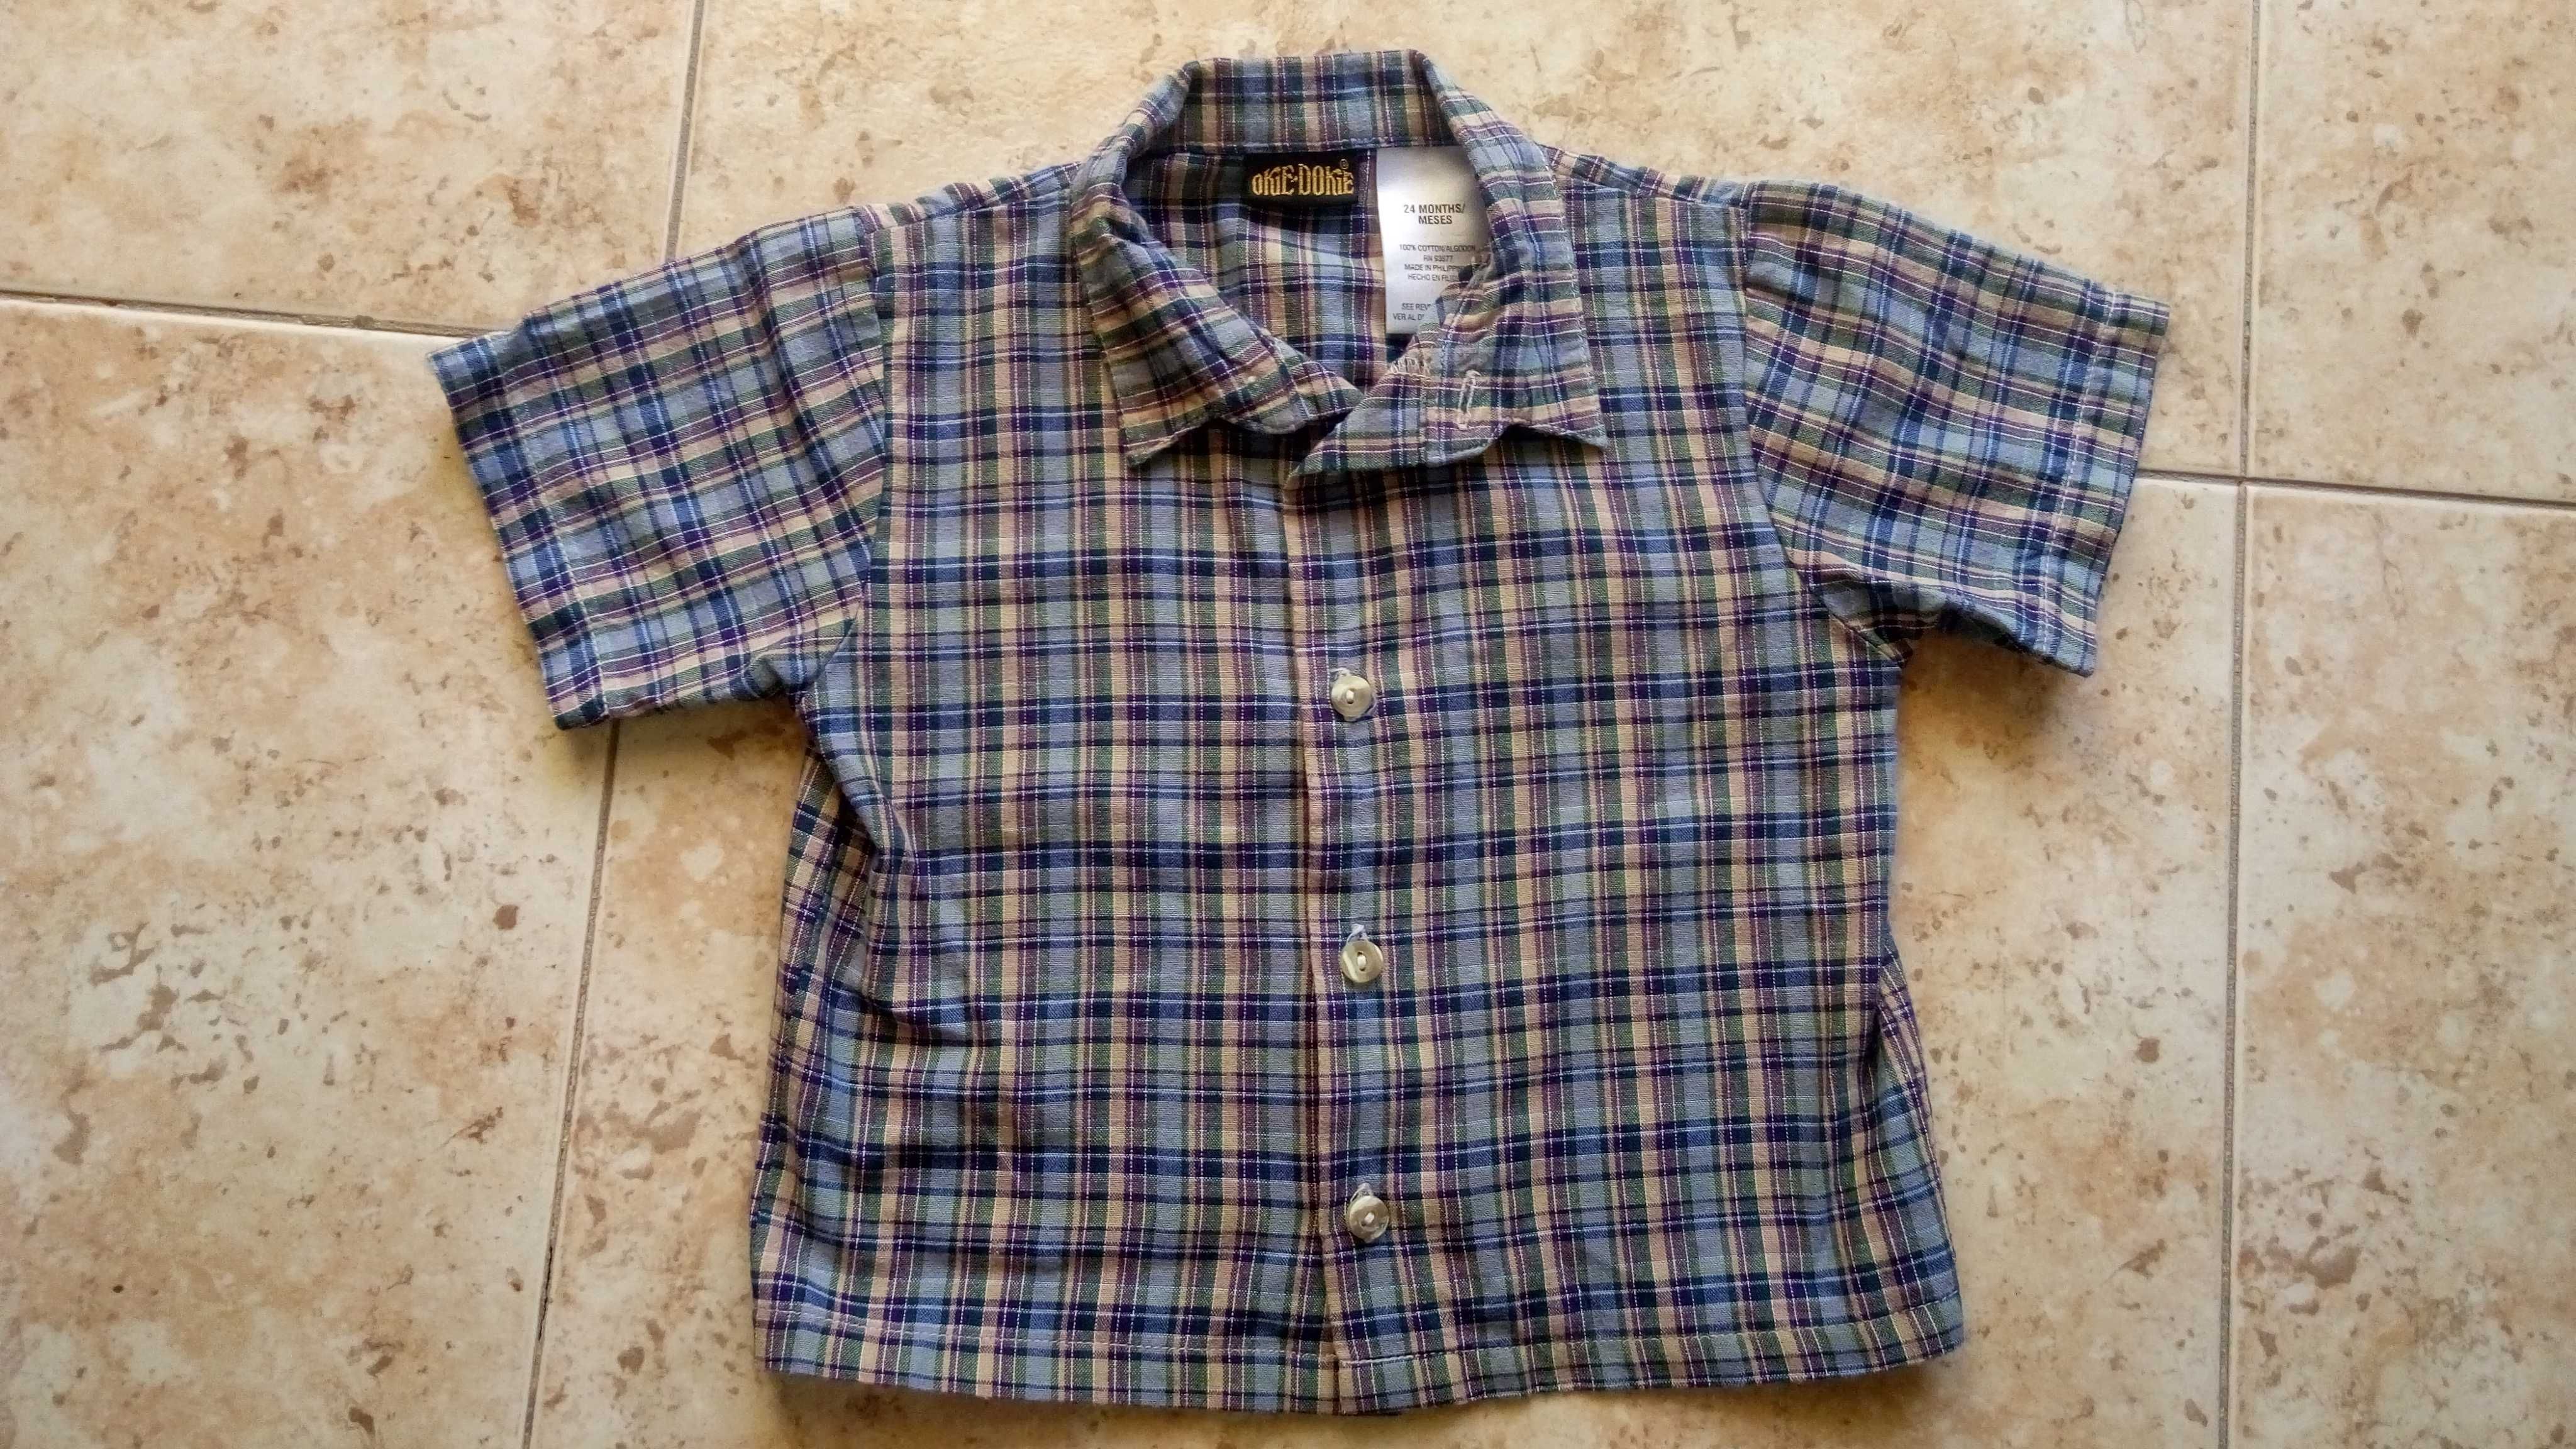 Camisas de menino 2-3 anos (como novas)